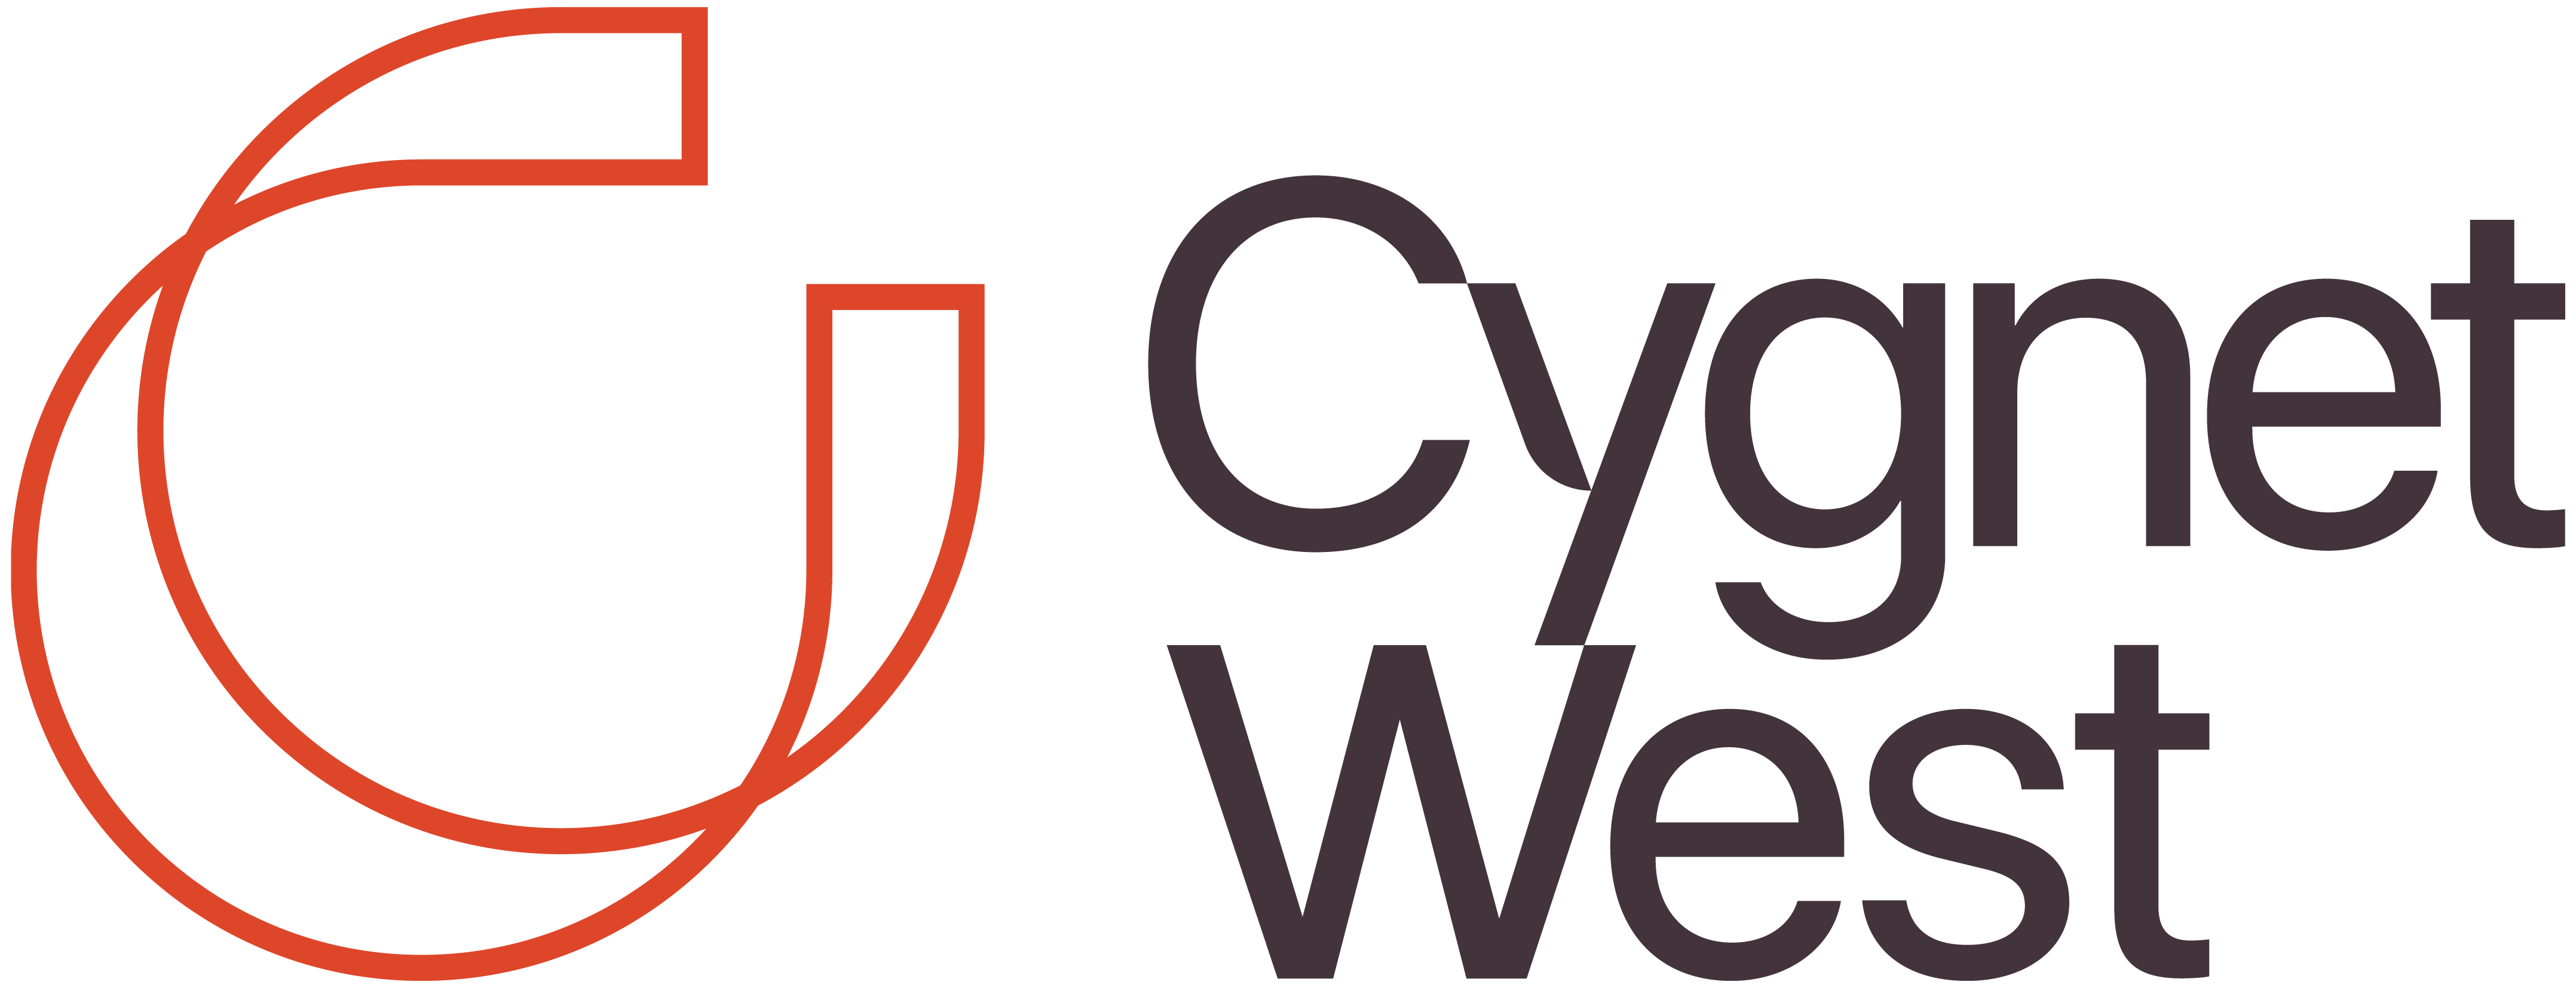 Cygnet West Strata Portfolio